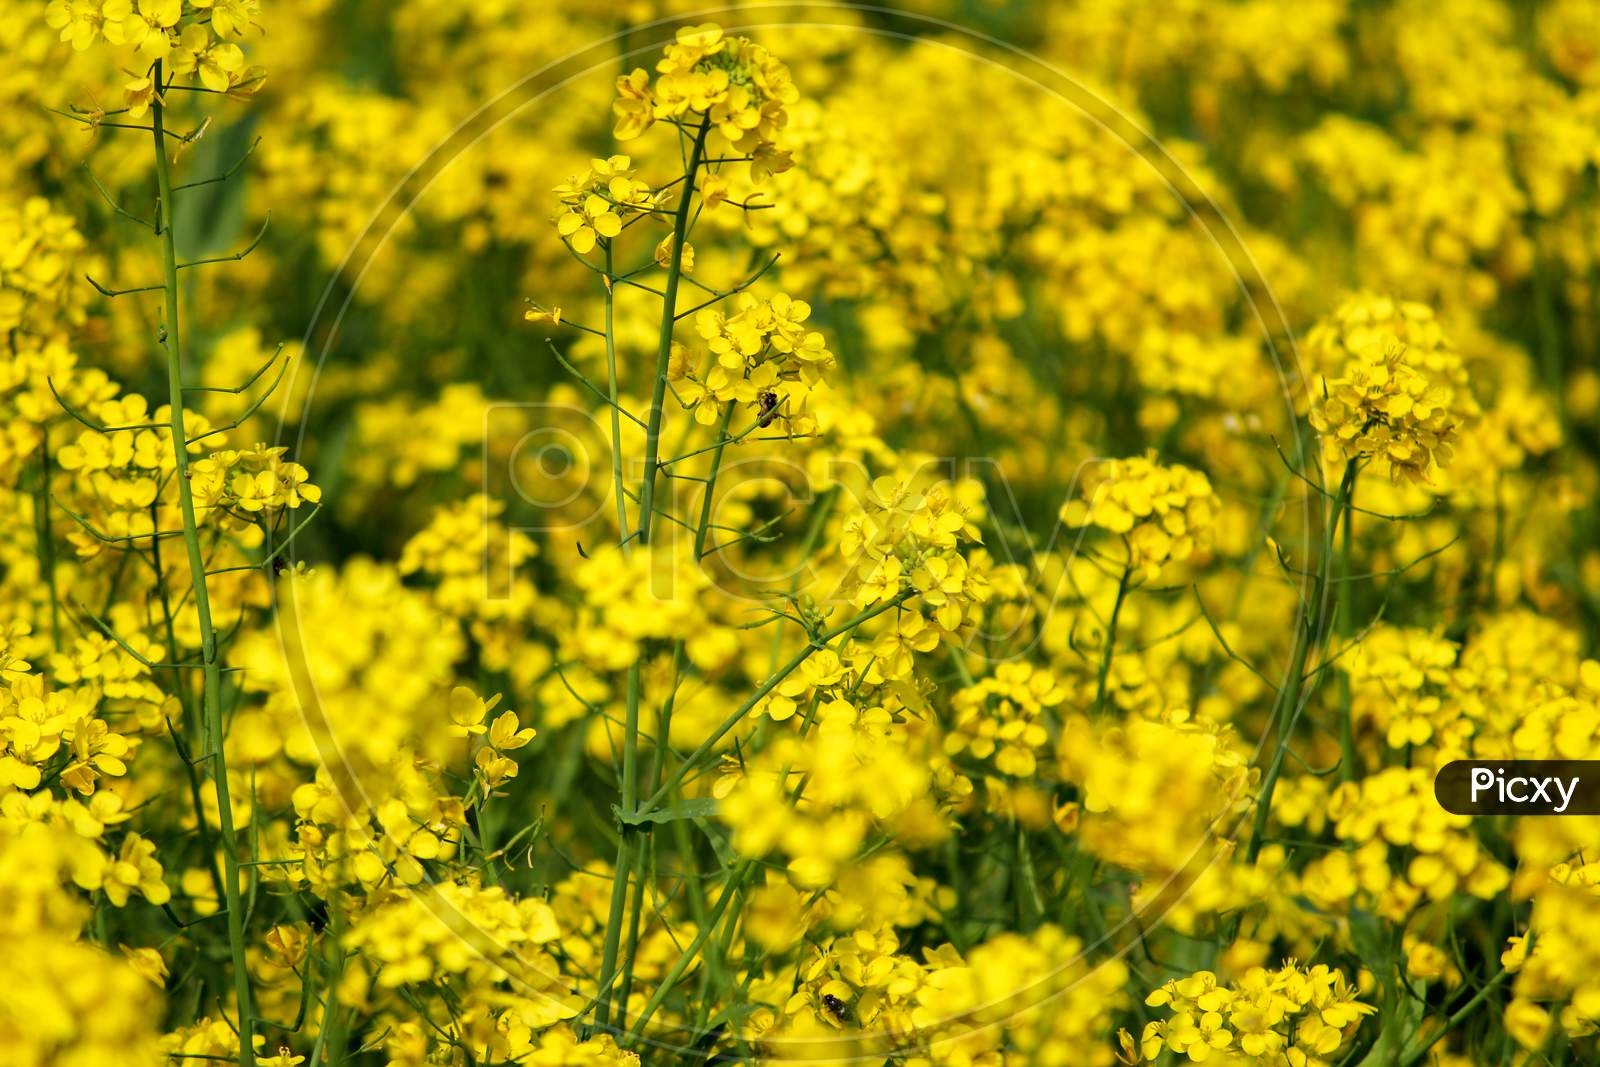 Yellow Mustard Flowers On Green Colored Mustard Plants In Mustard Field